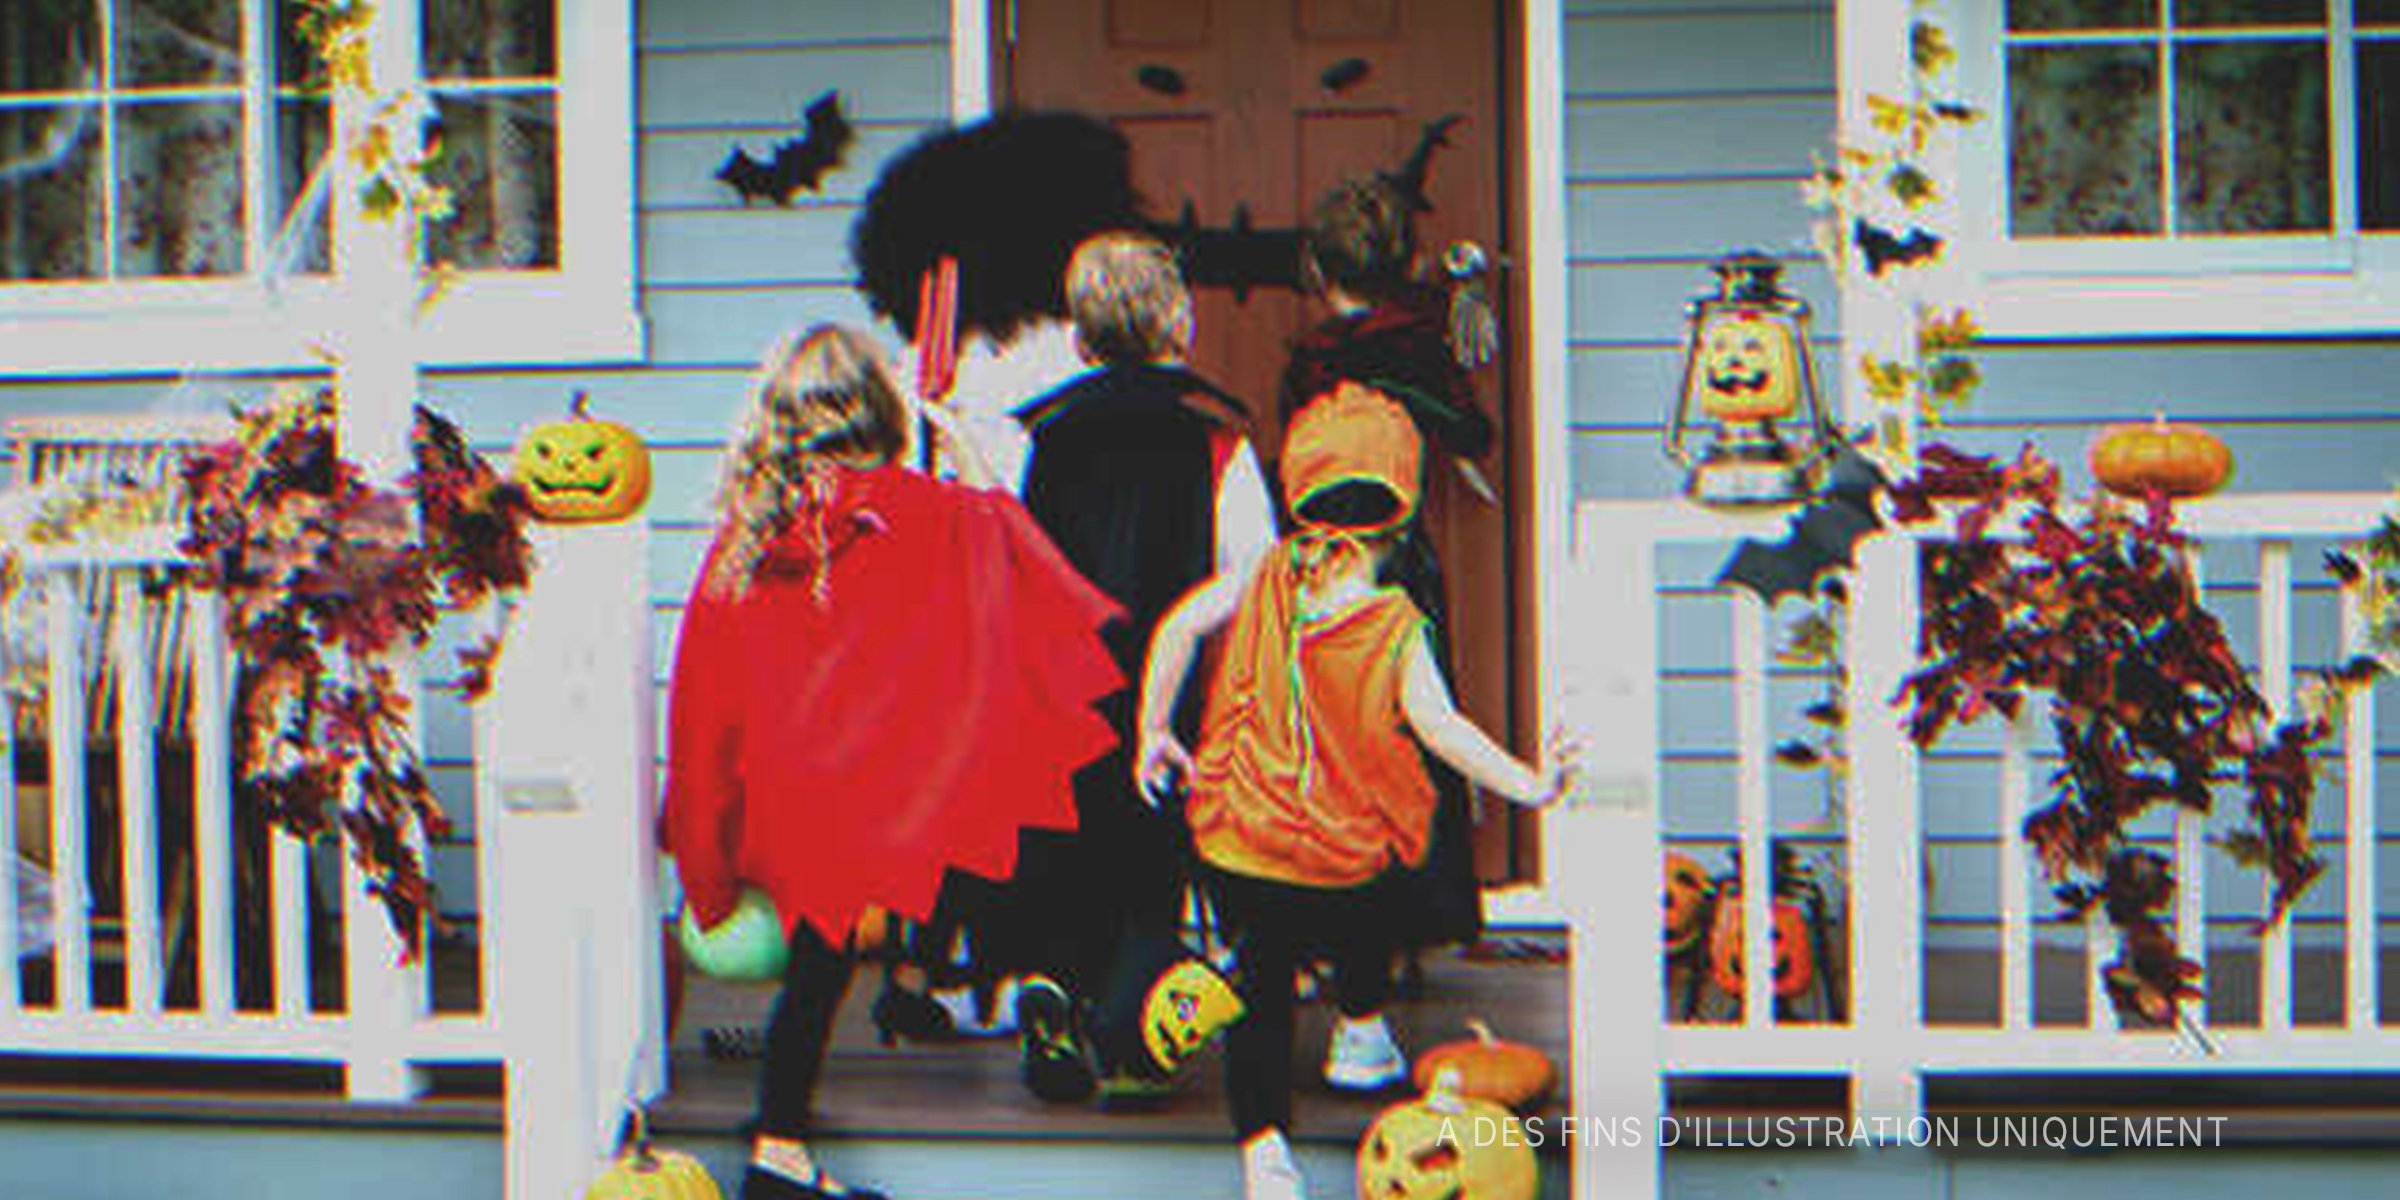 Des enfants faisant du porte-à-porte à Halloween | Source : Shutterstock 